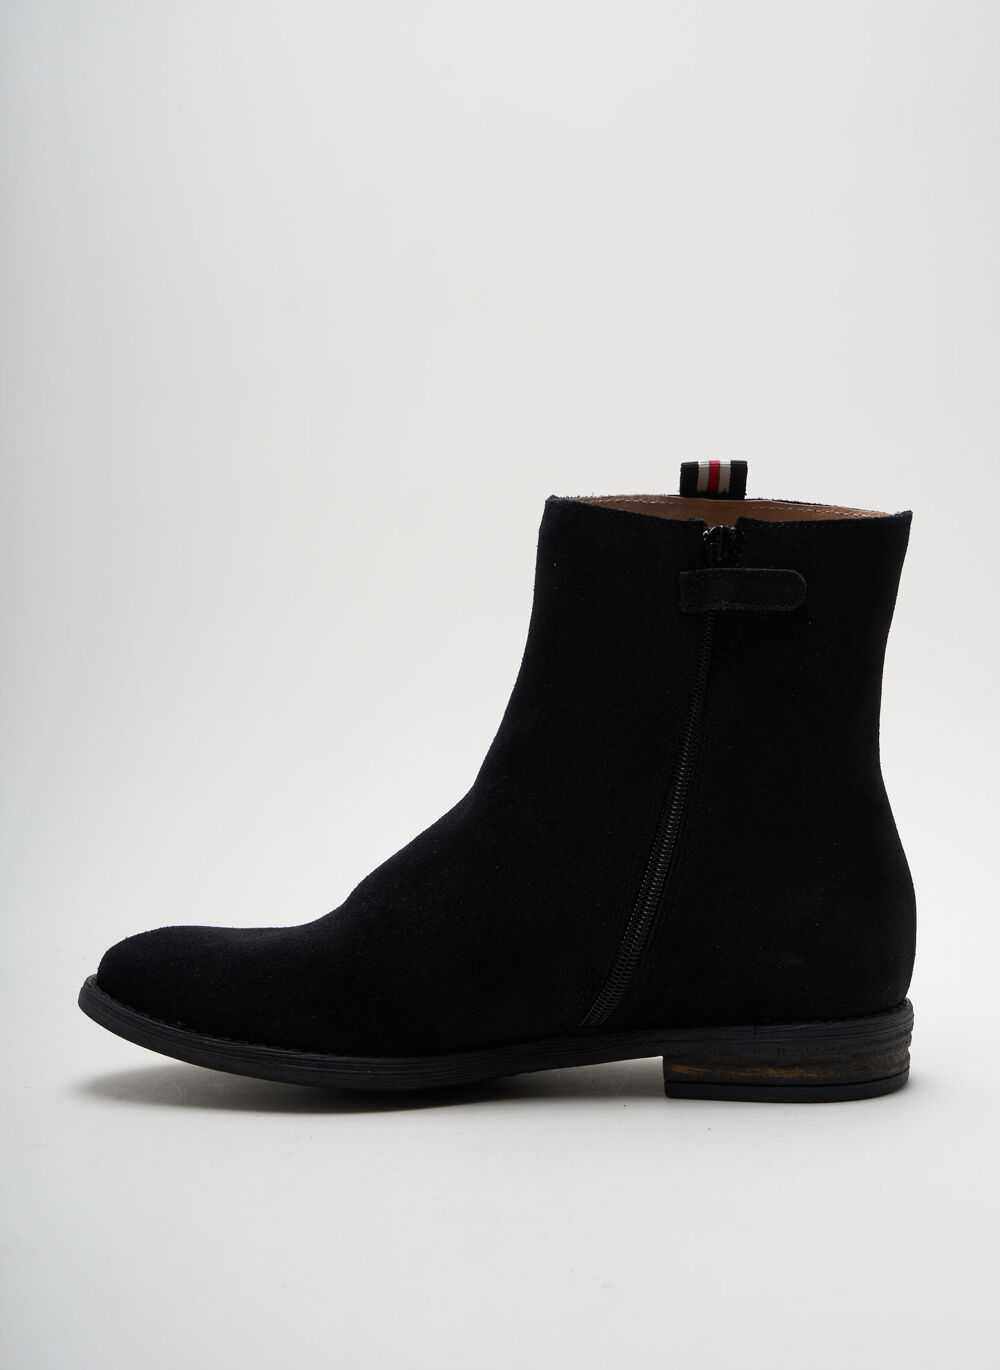 Bottines/Boots femme Acebos noir taille : 39 Vtements